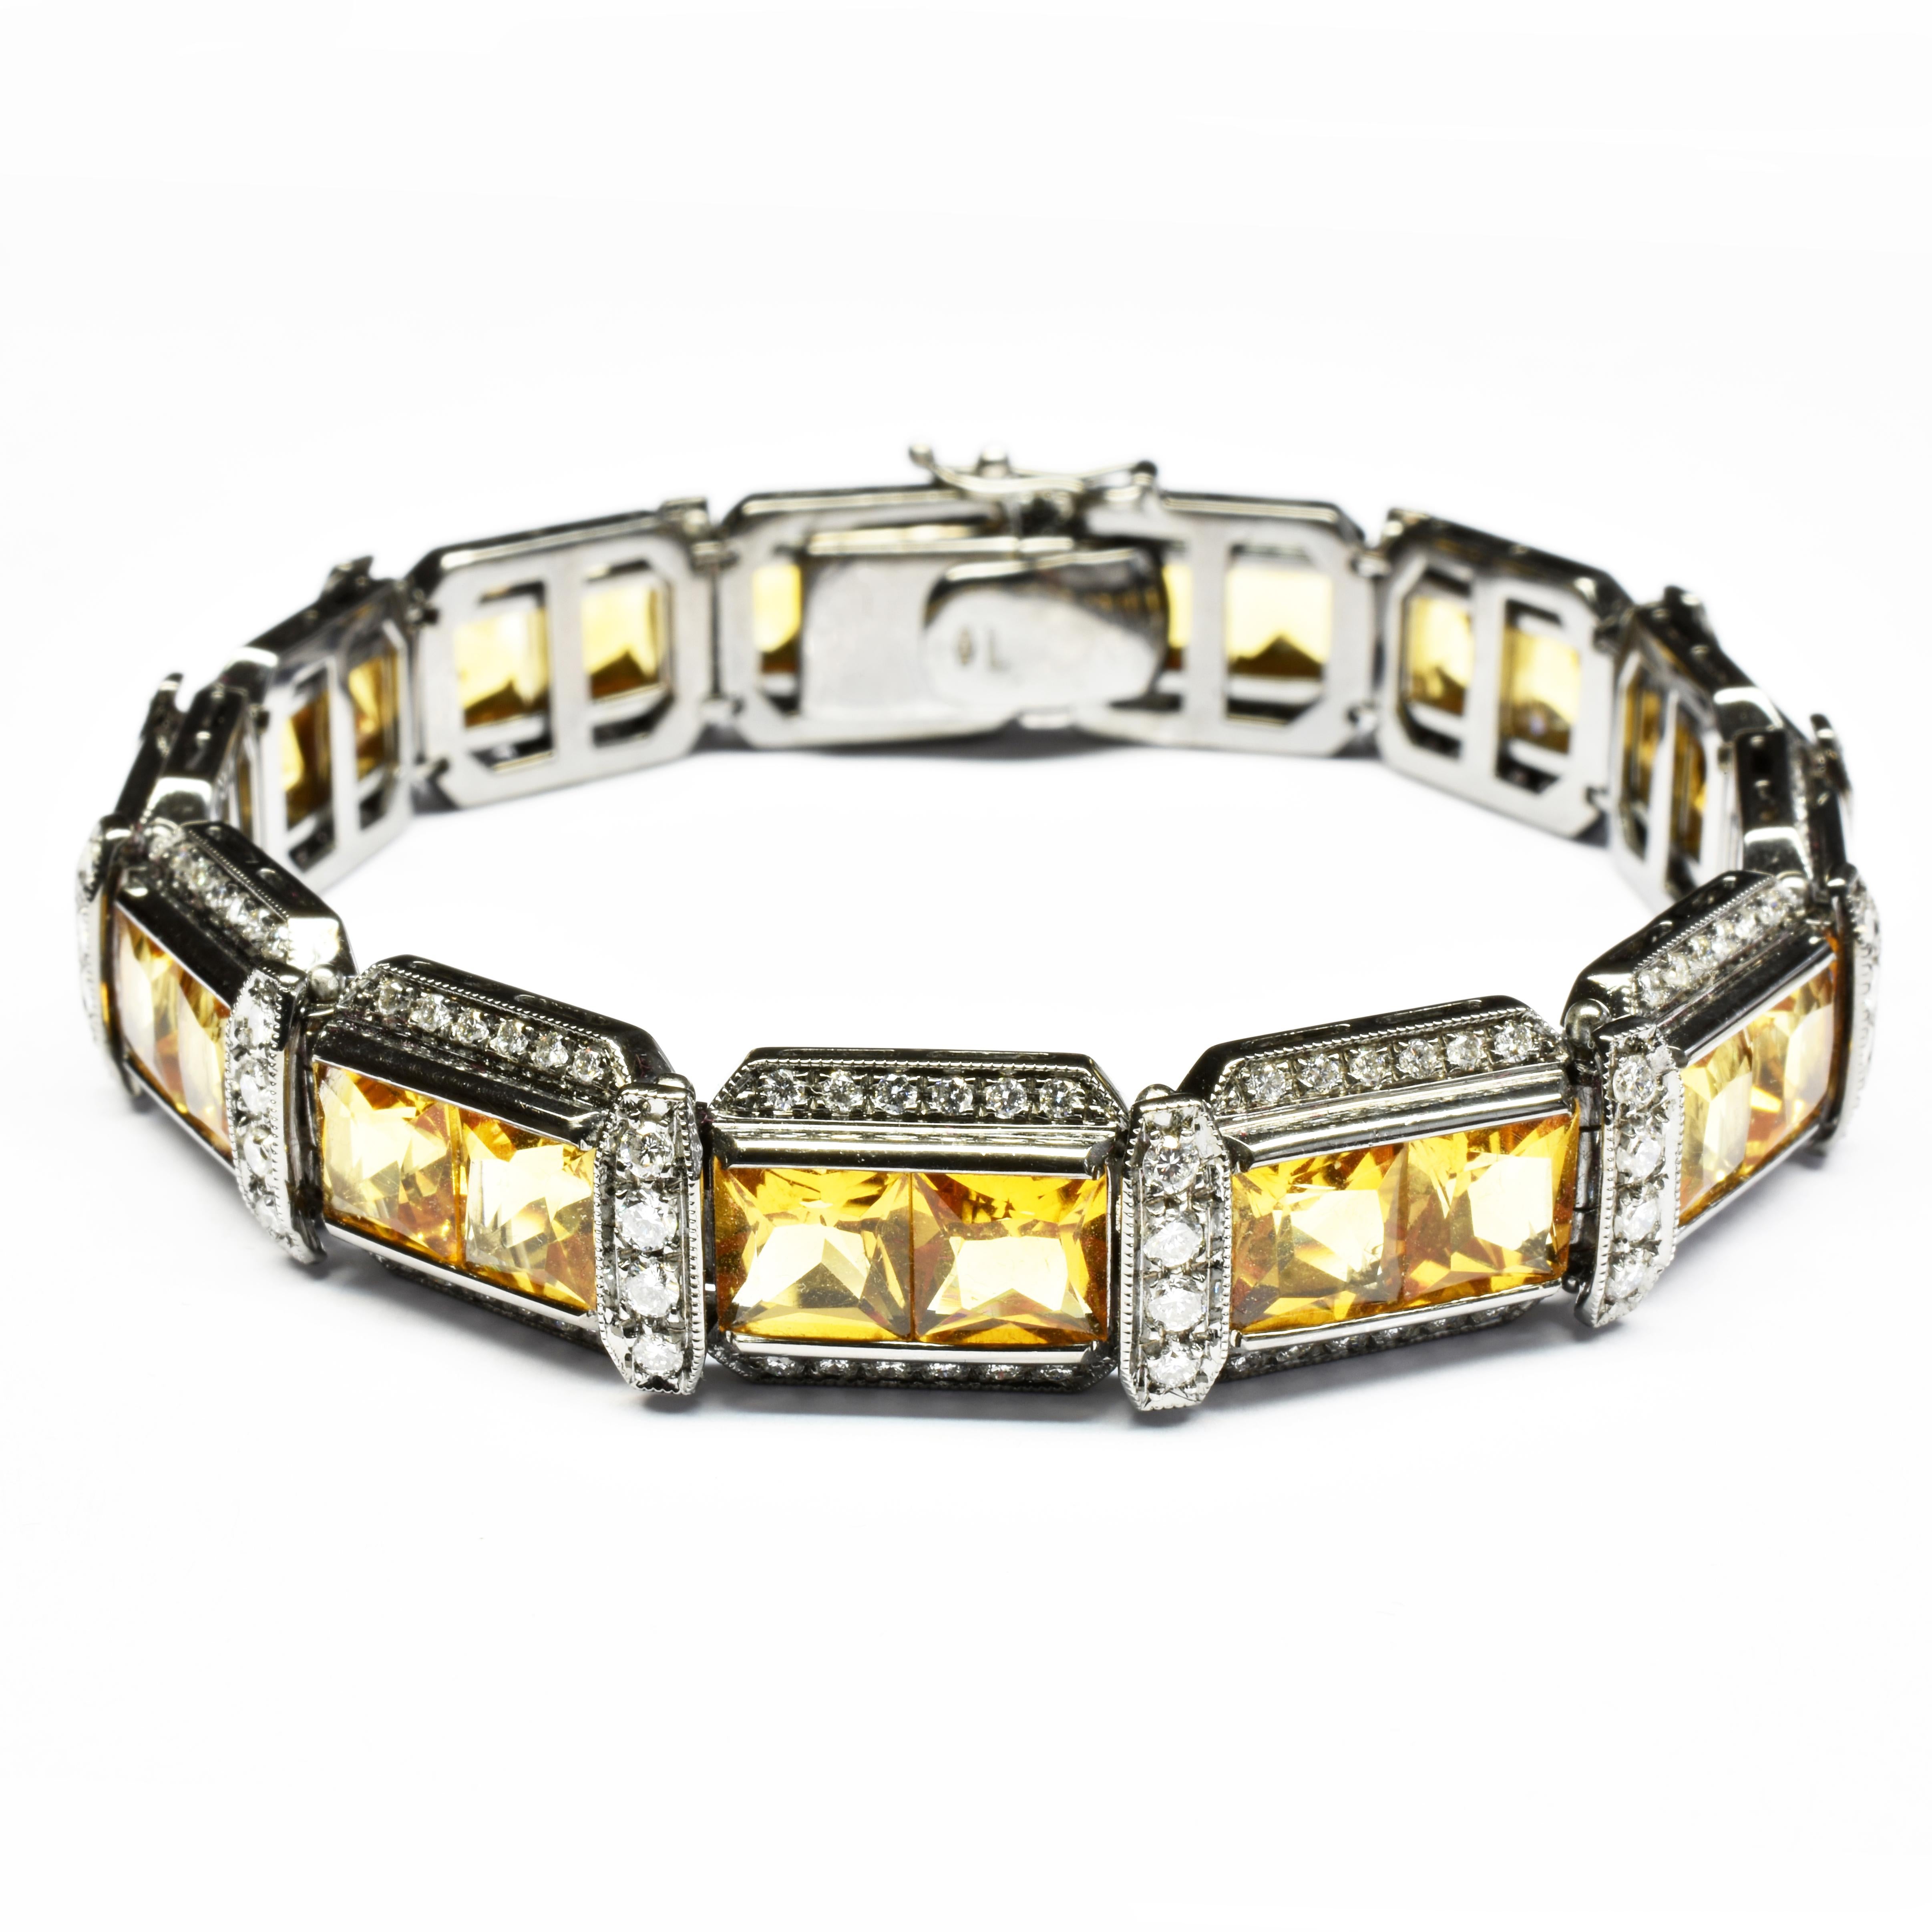 Gilberto Cassola Armband aus 18 Kt Schwarzgold mit Citrin-Quarz im Prinzessinnenschliff und weißen Diamanten.
Dieses einzigartige Goldarmband ist schwarz rhodiniert und sieht modern und stilvoll aus und passt perfekt zu einem Cocktailkleid oder